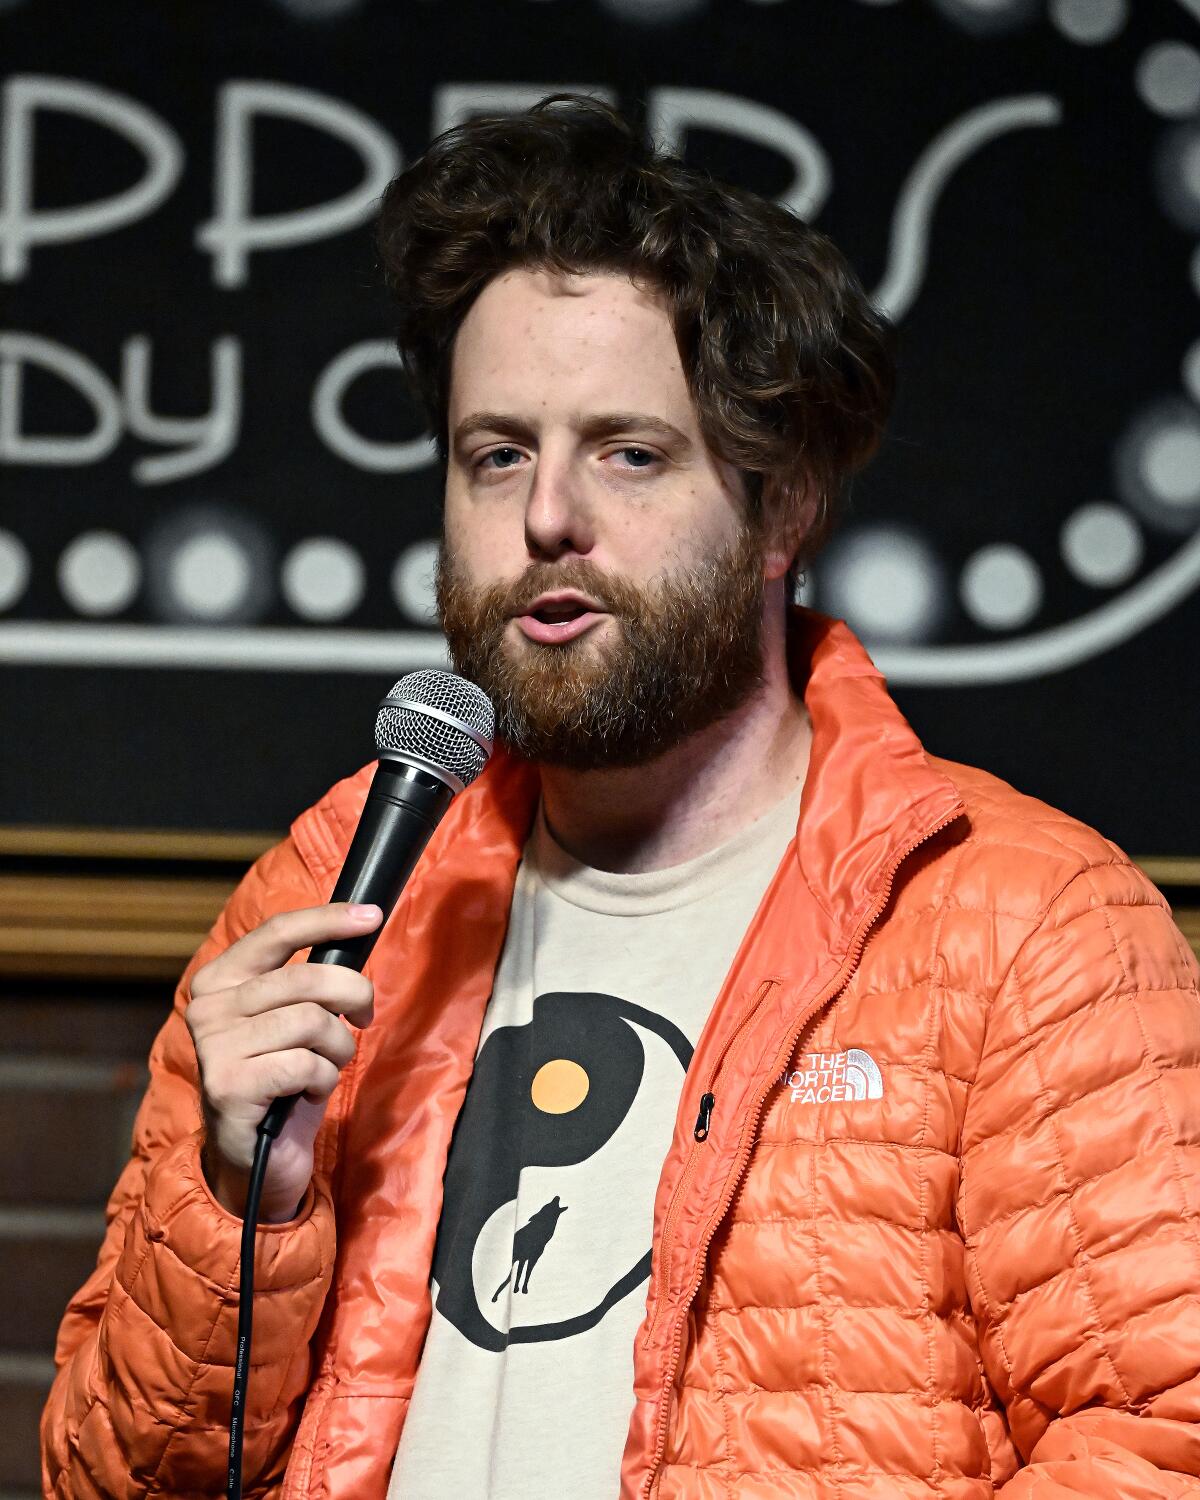 A bearded man in an orange puffer jacket speaks into a microphone